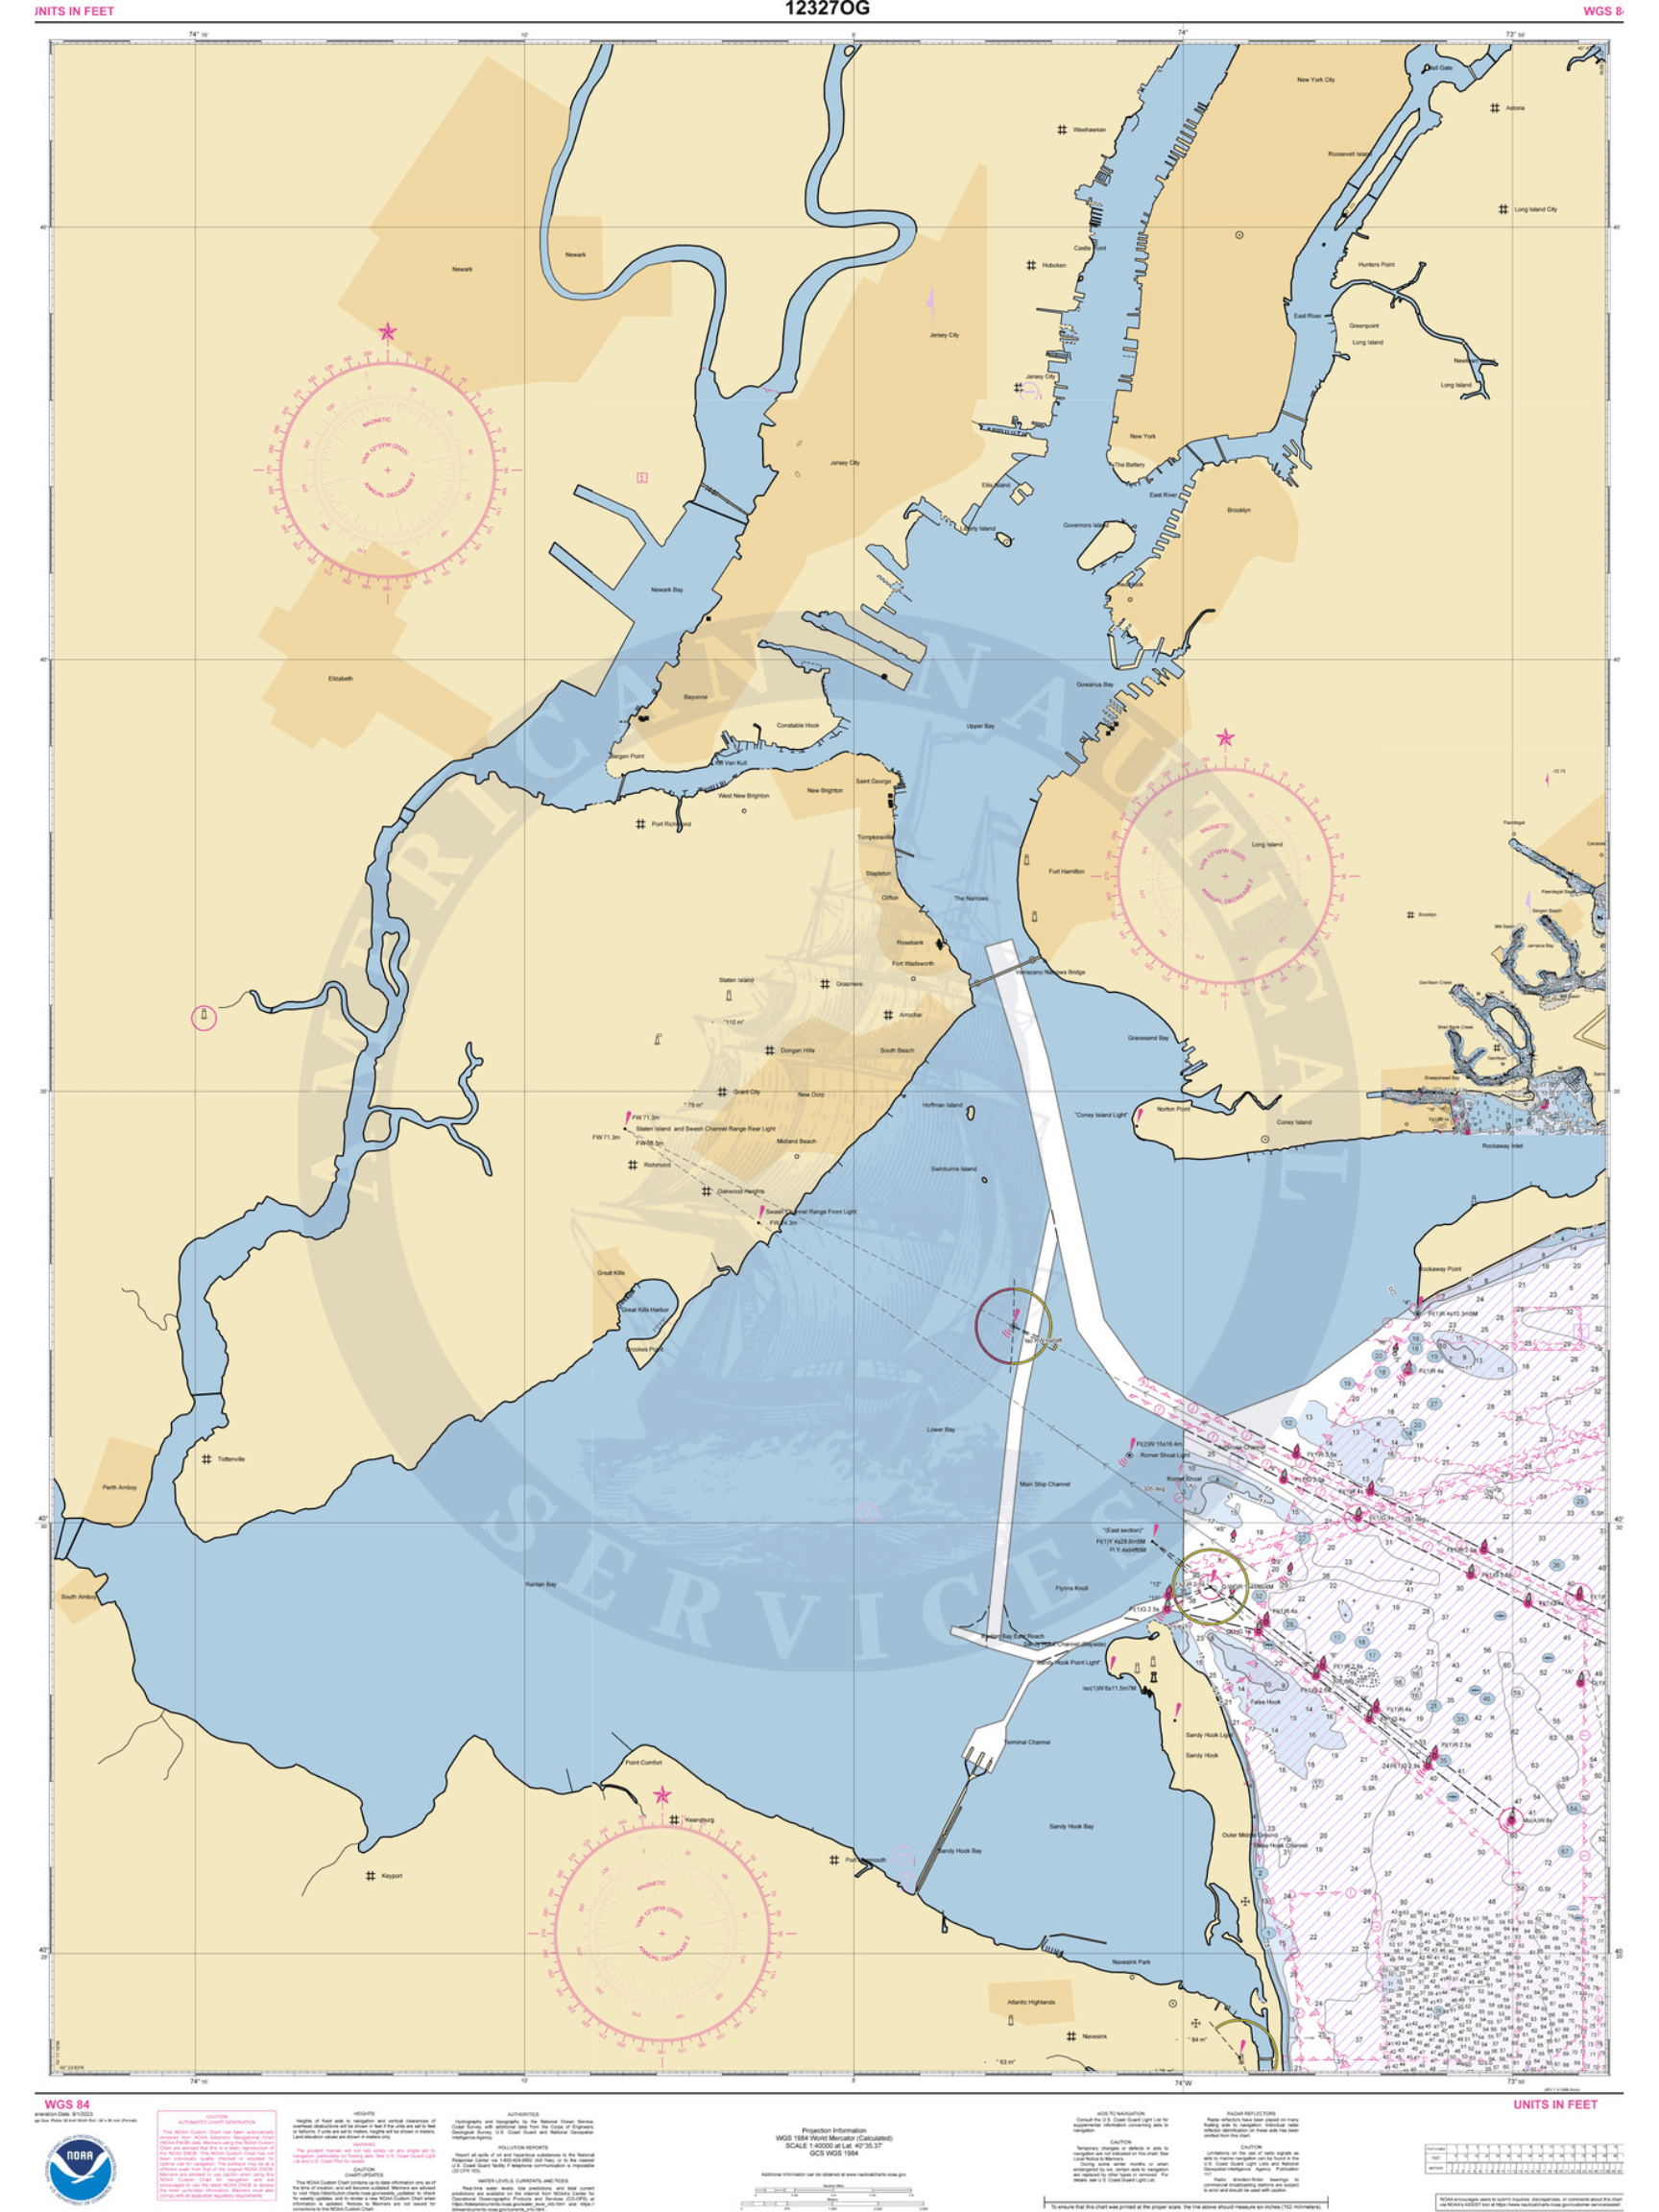 NOAA Nautical Chart 12327: New York Harbor